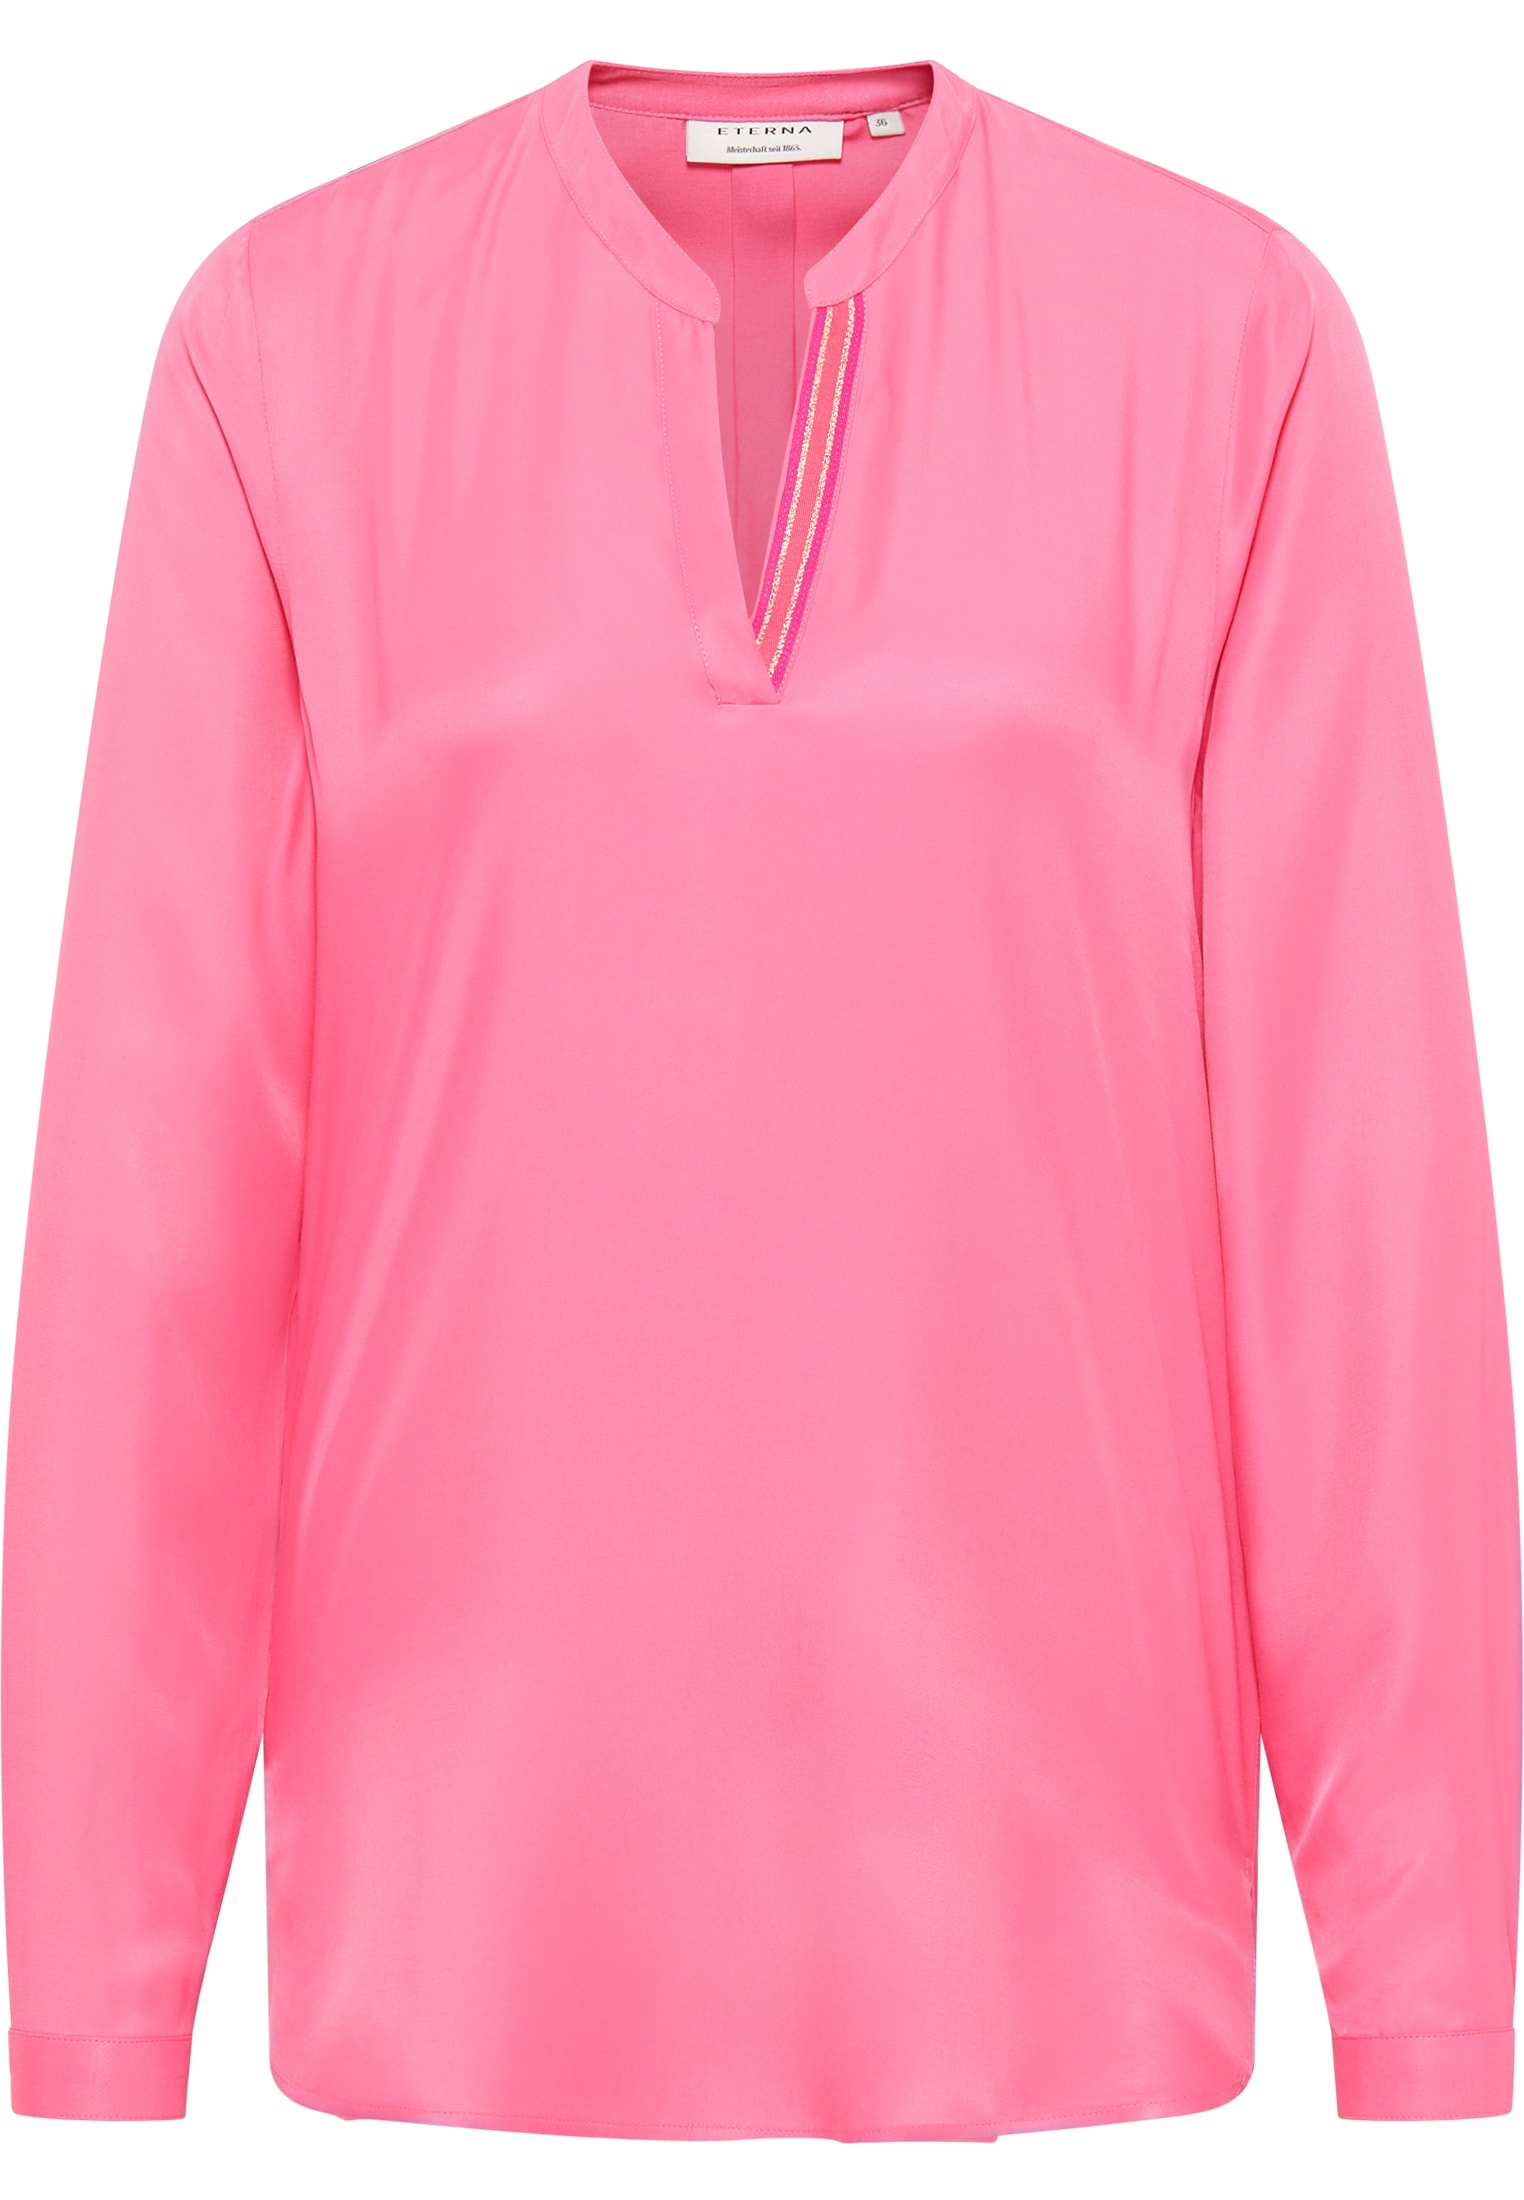 Viscose Shirt | pink 2BL04272-15-21-36-1/1 | 36 unifarben pink | Langarm | in Bluse